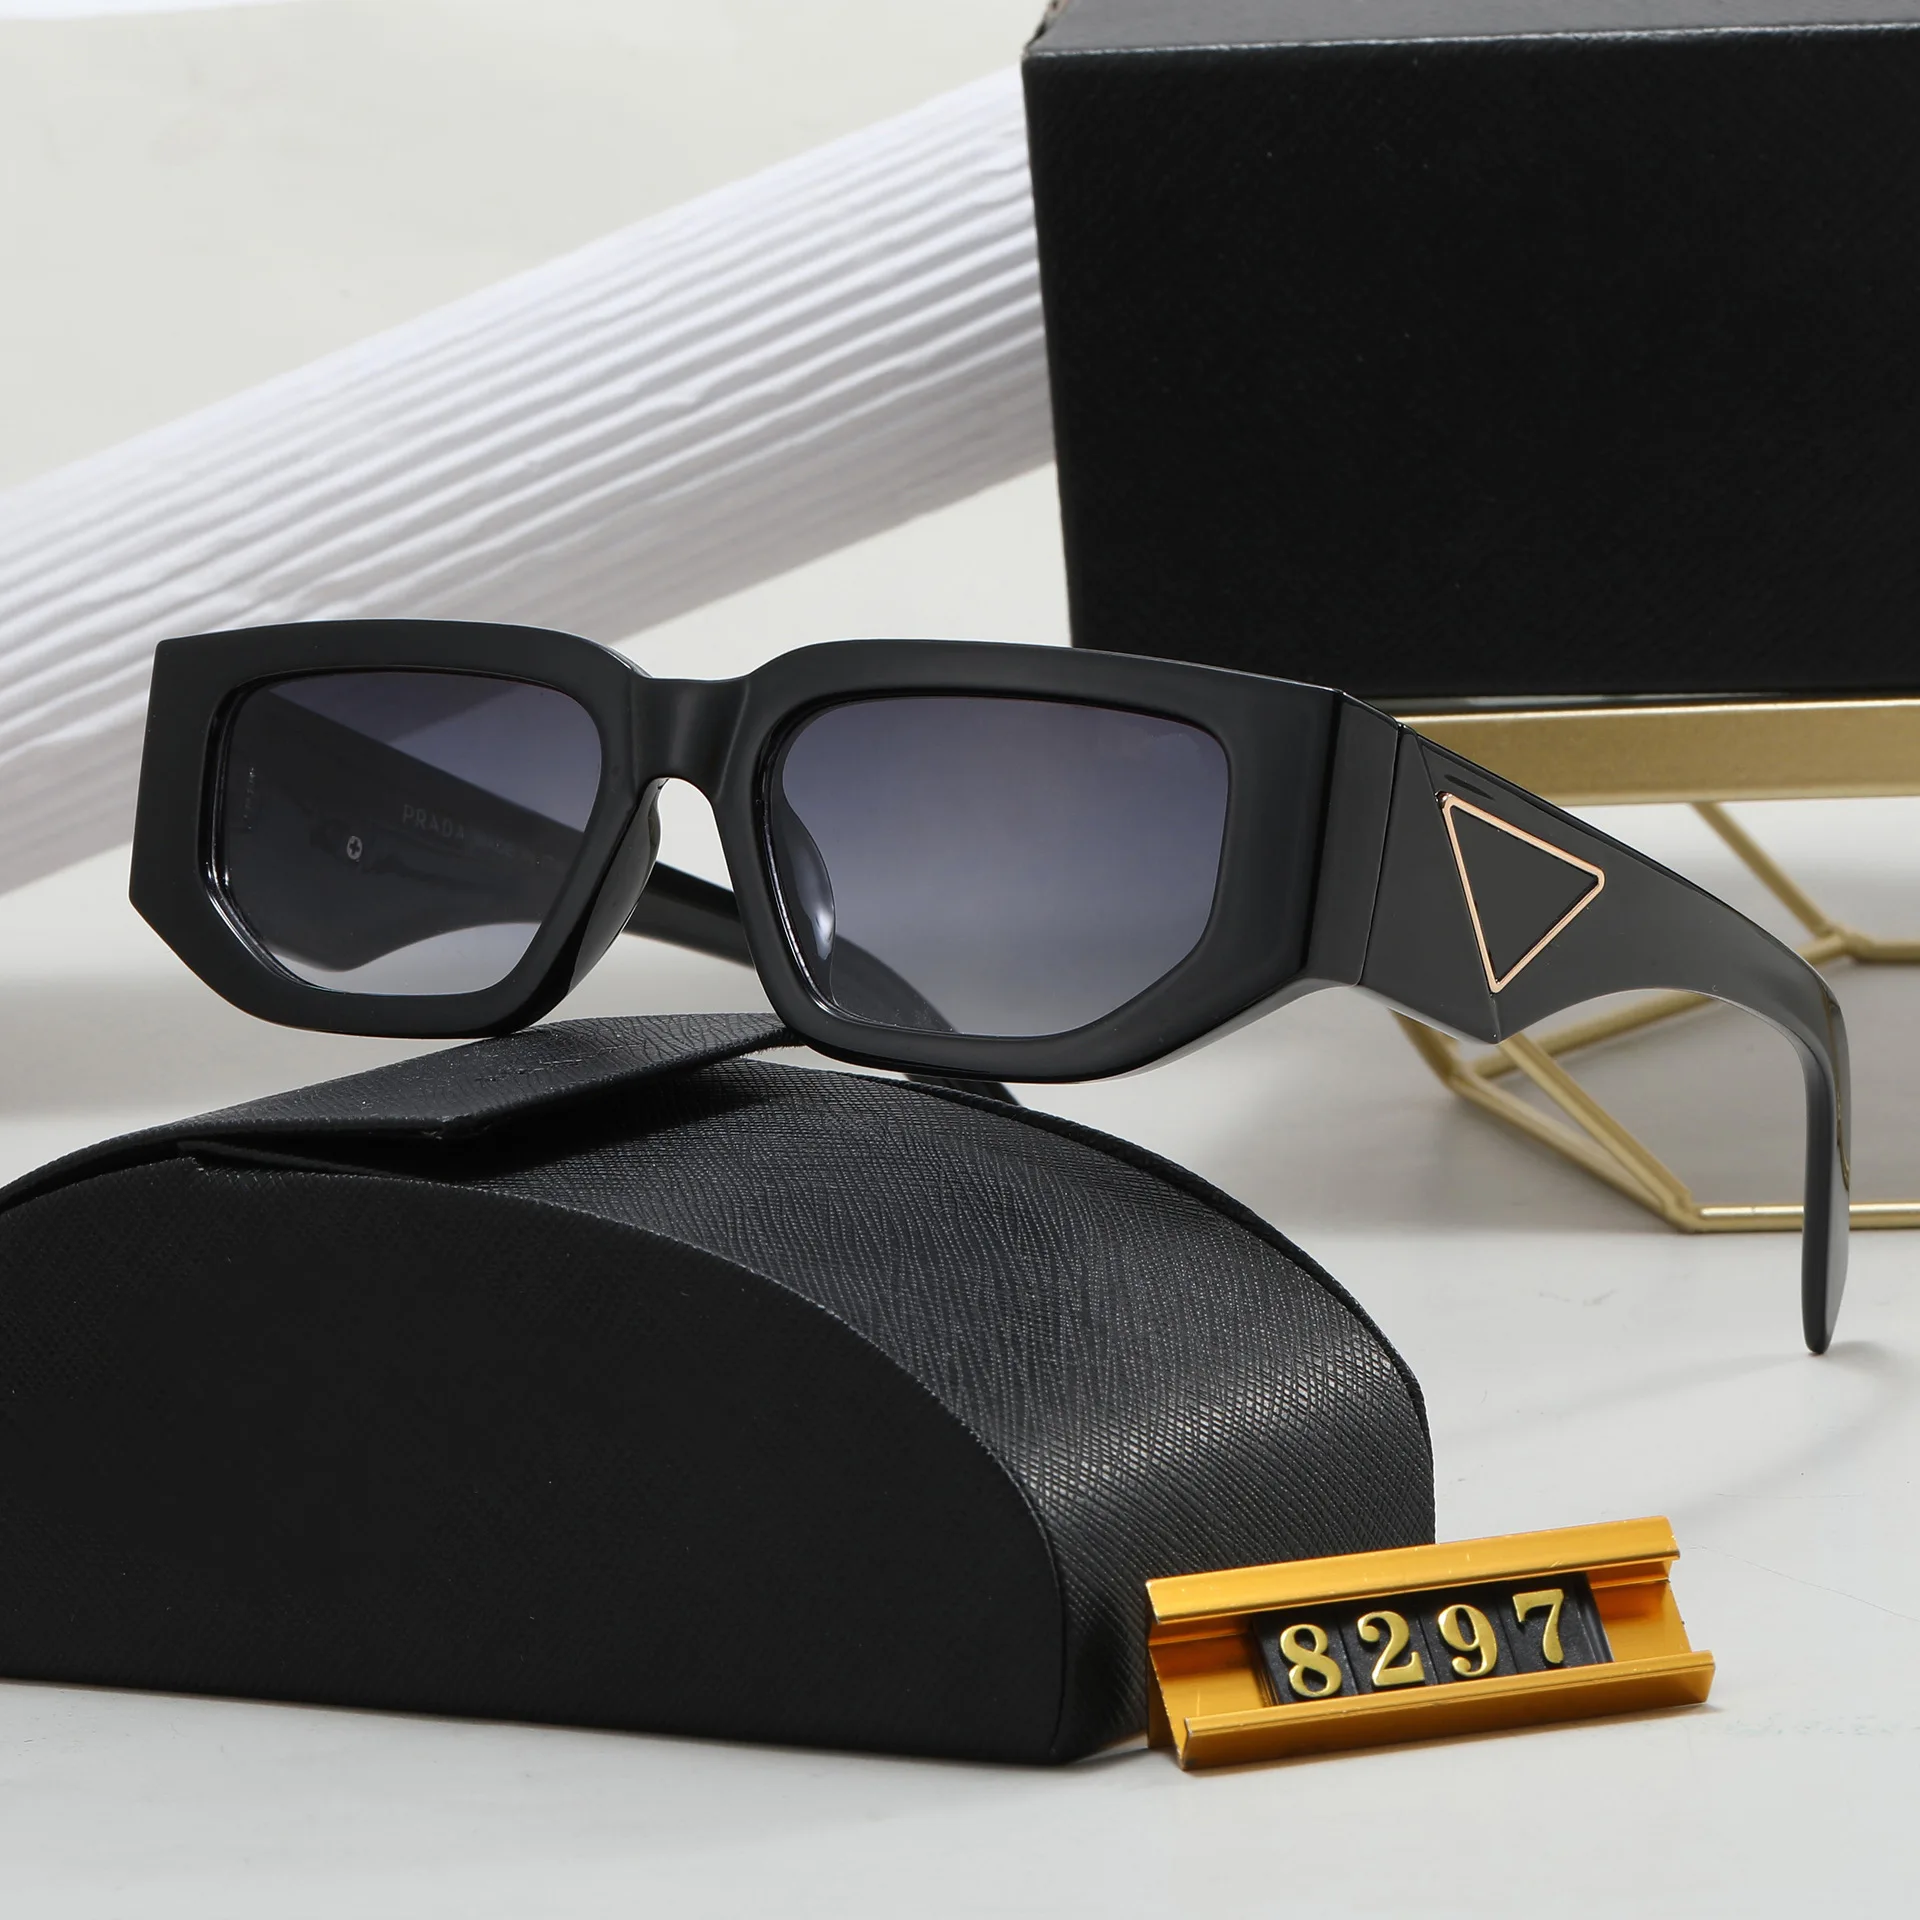 

Солнцезащитные очки «кошачий глаз» для мужчин и женщин, винтажные брендовые дизайнерские солнечные очки в маленькой квадратной оправе, в ретро стиле, с защитой от ультрафиолета